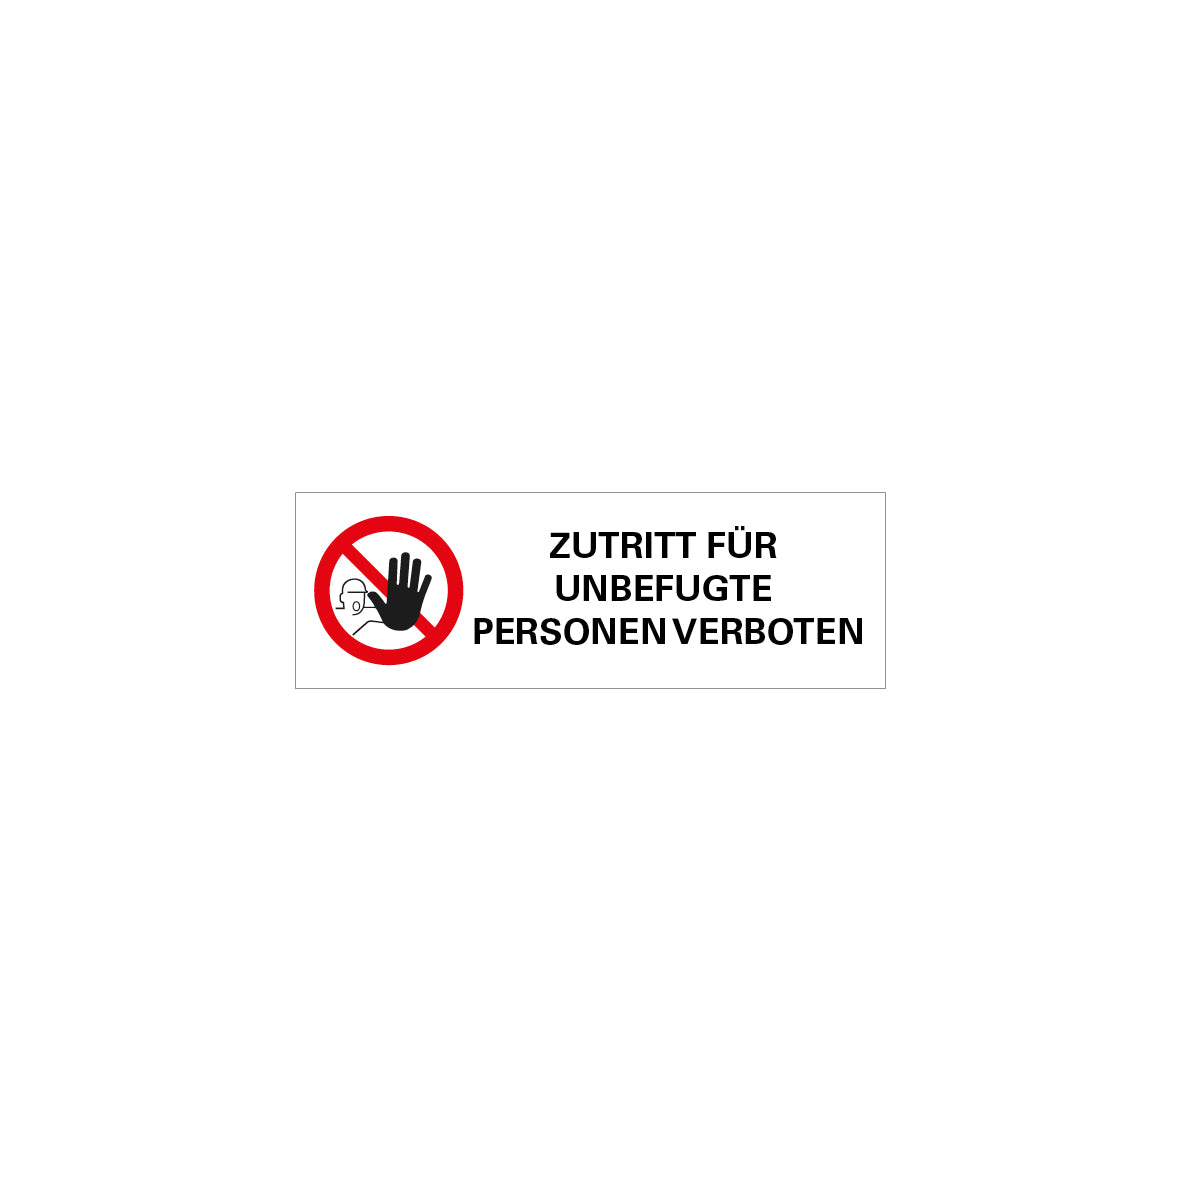 6.V-122 ZUTRITT FÜR UNBEF..., Verbotszeichen, Praxisbewährt